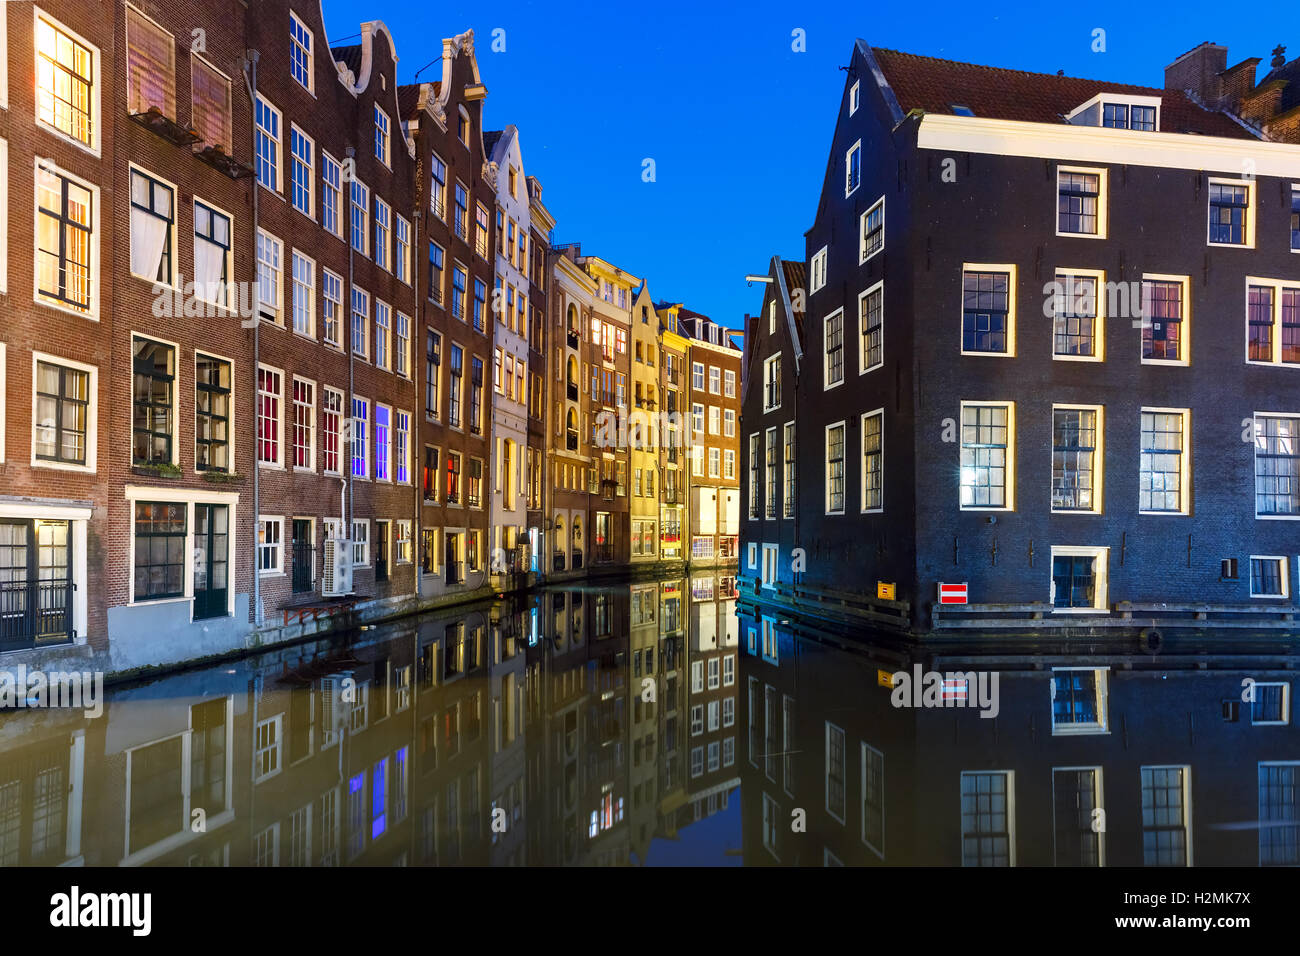 Nuit maison typique hollandaise, Amsterdam, Pays-Bas. Banque D'Images